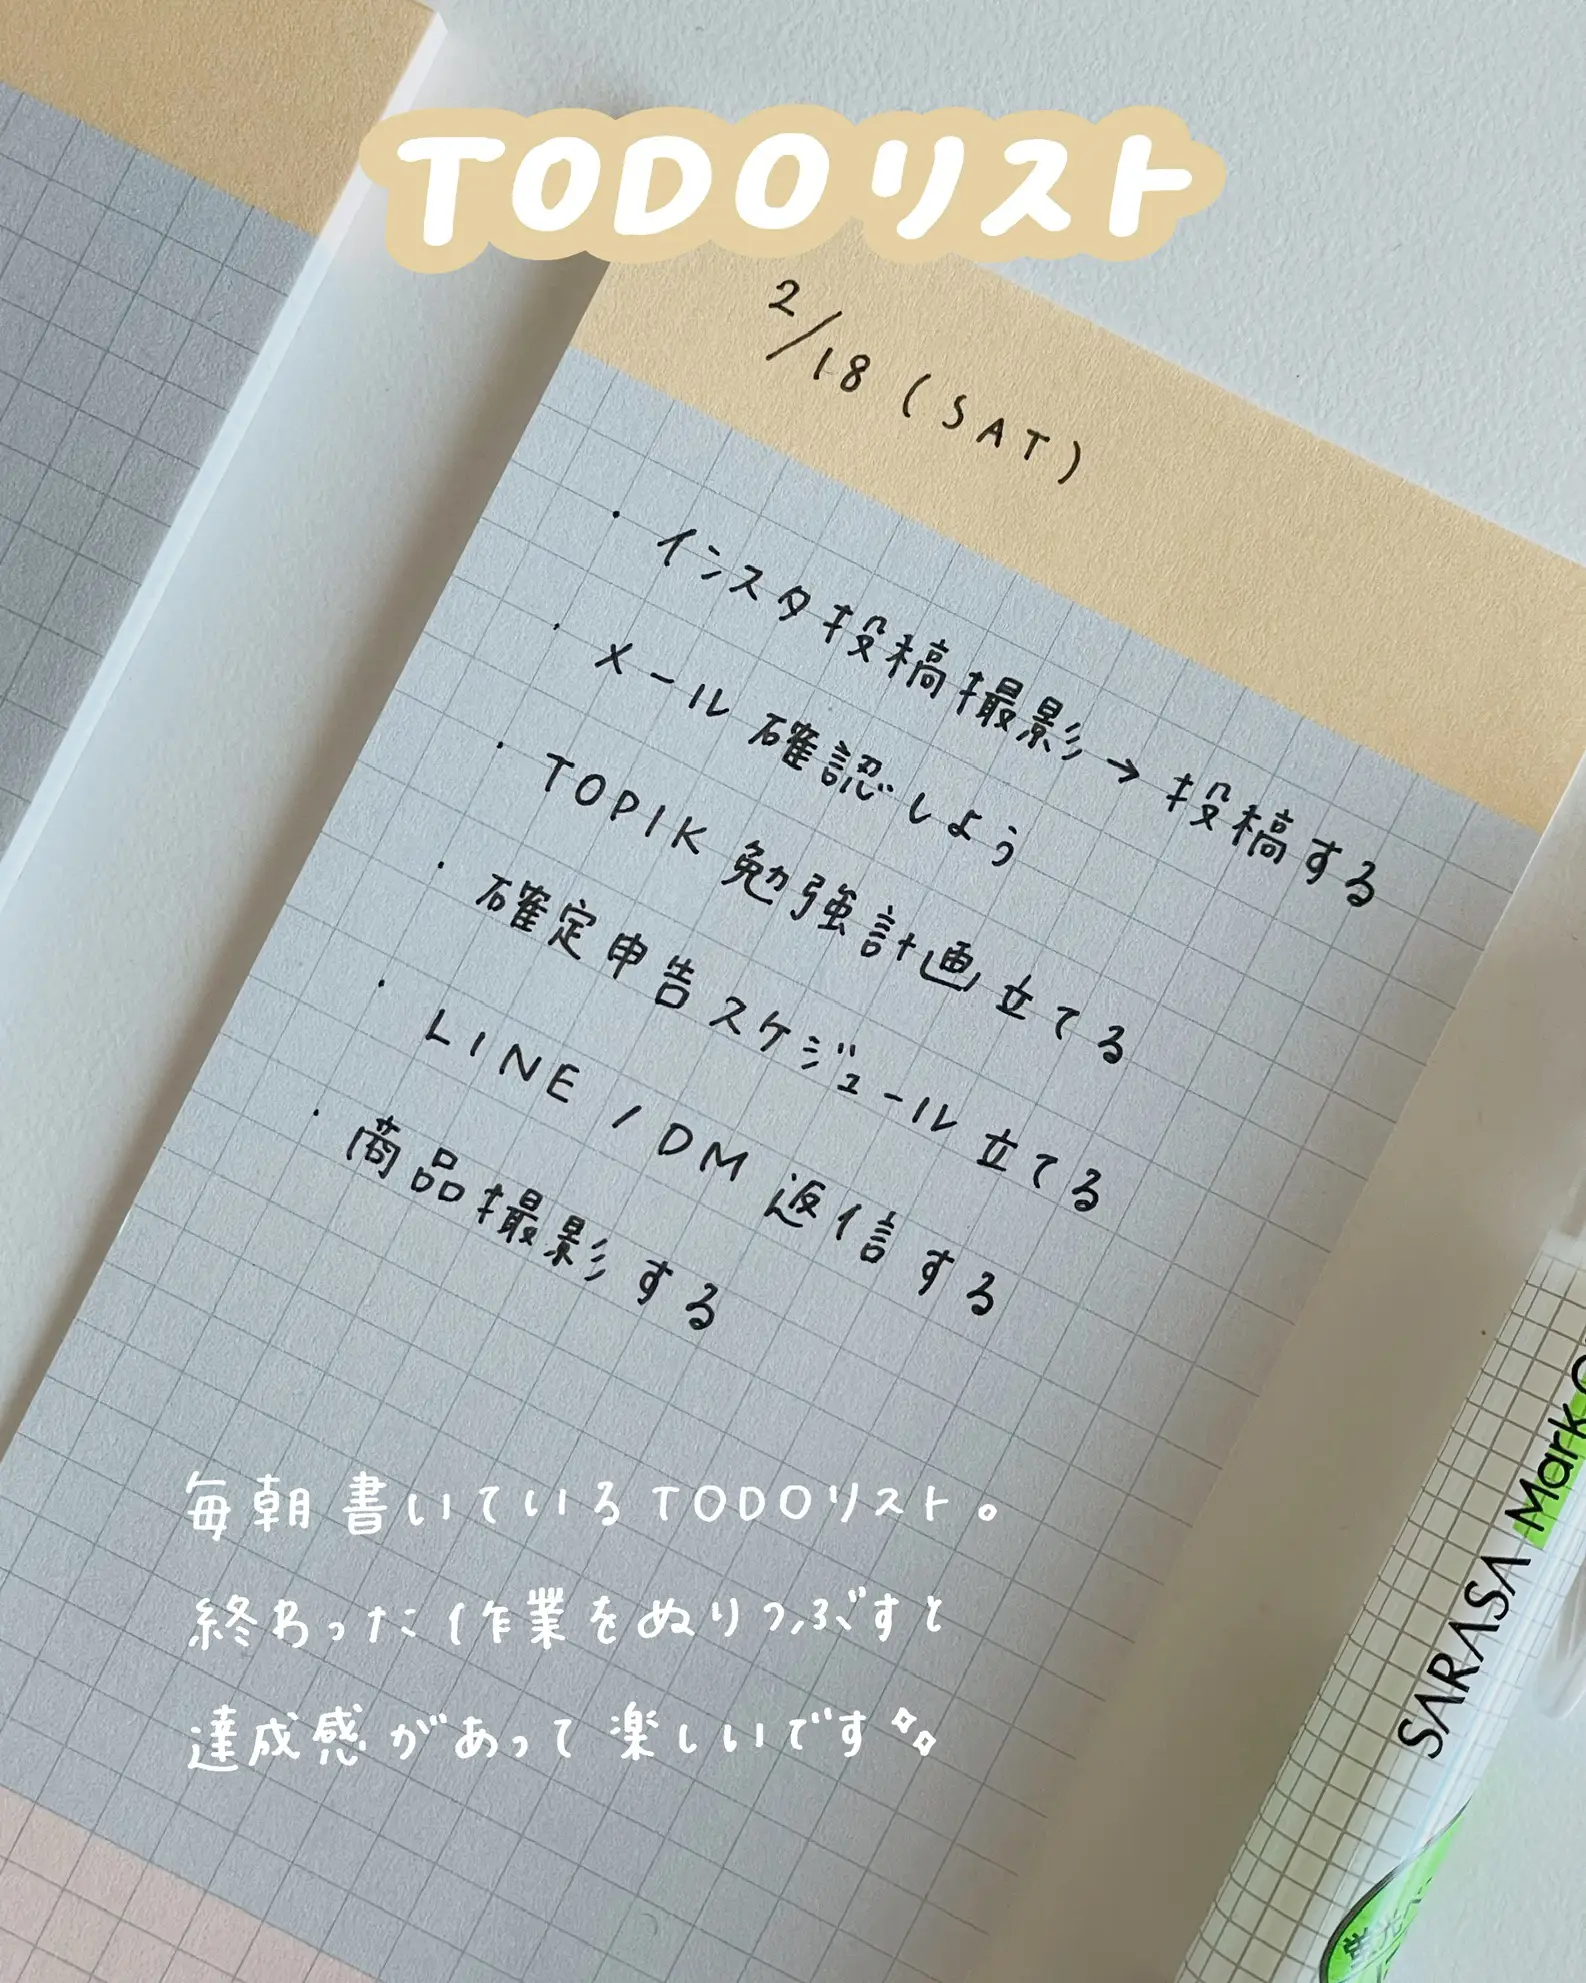 メモ帳デコる - Lemon8検索